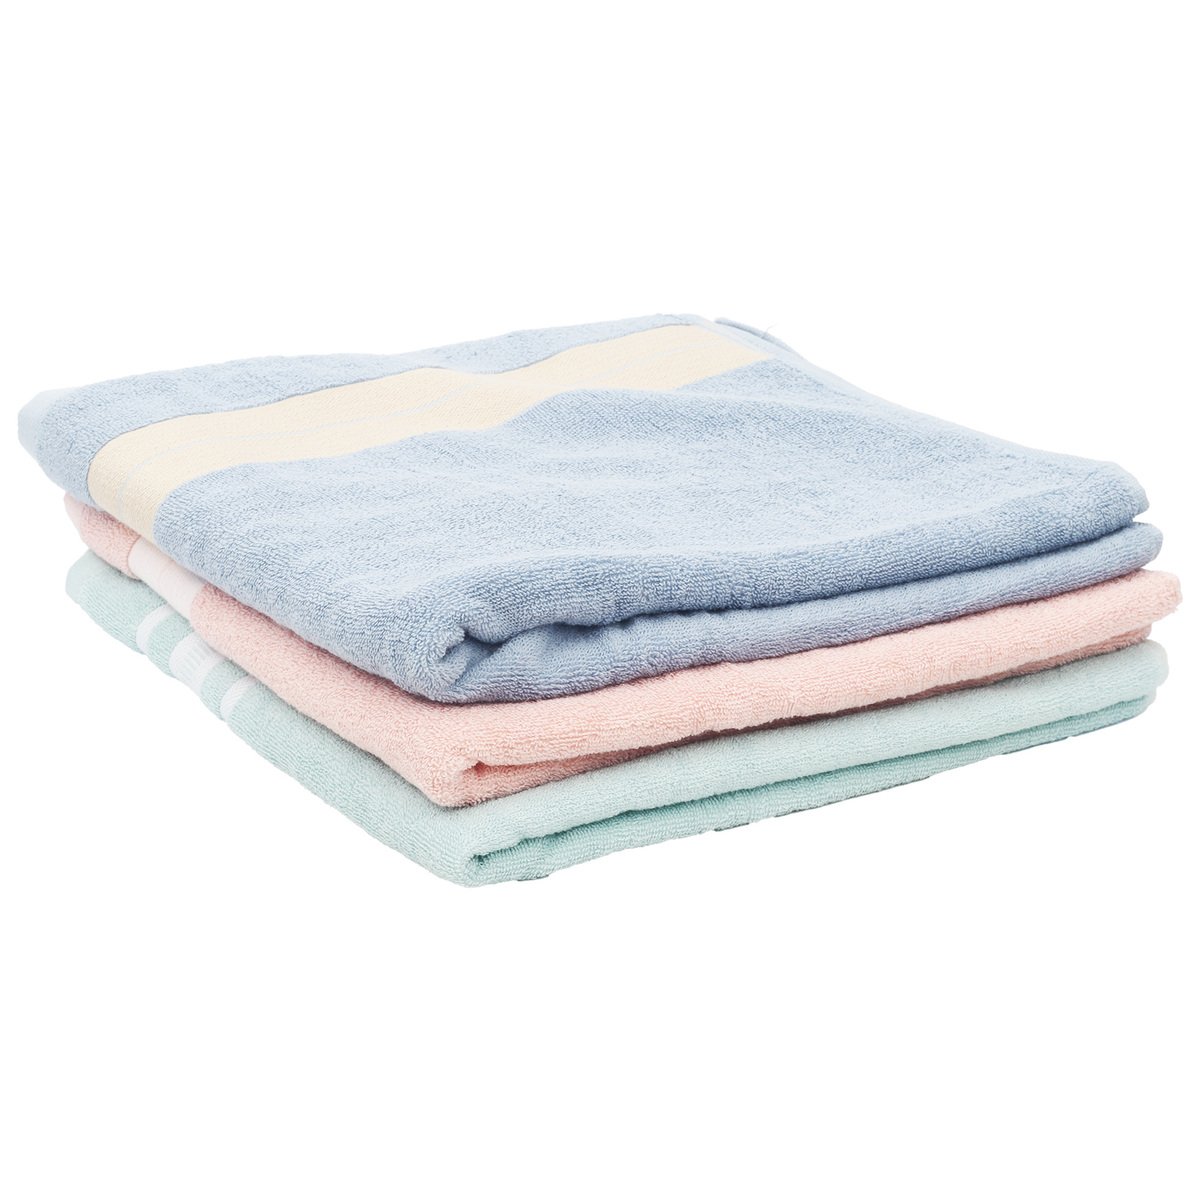 Maple Leaf Home Bath Towel Cotton 70 x 140cm 7532L43 Assorted